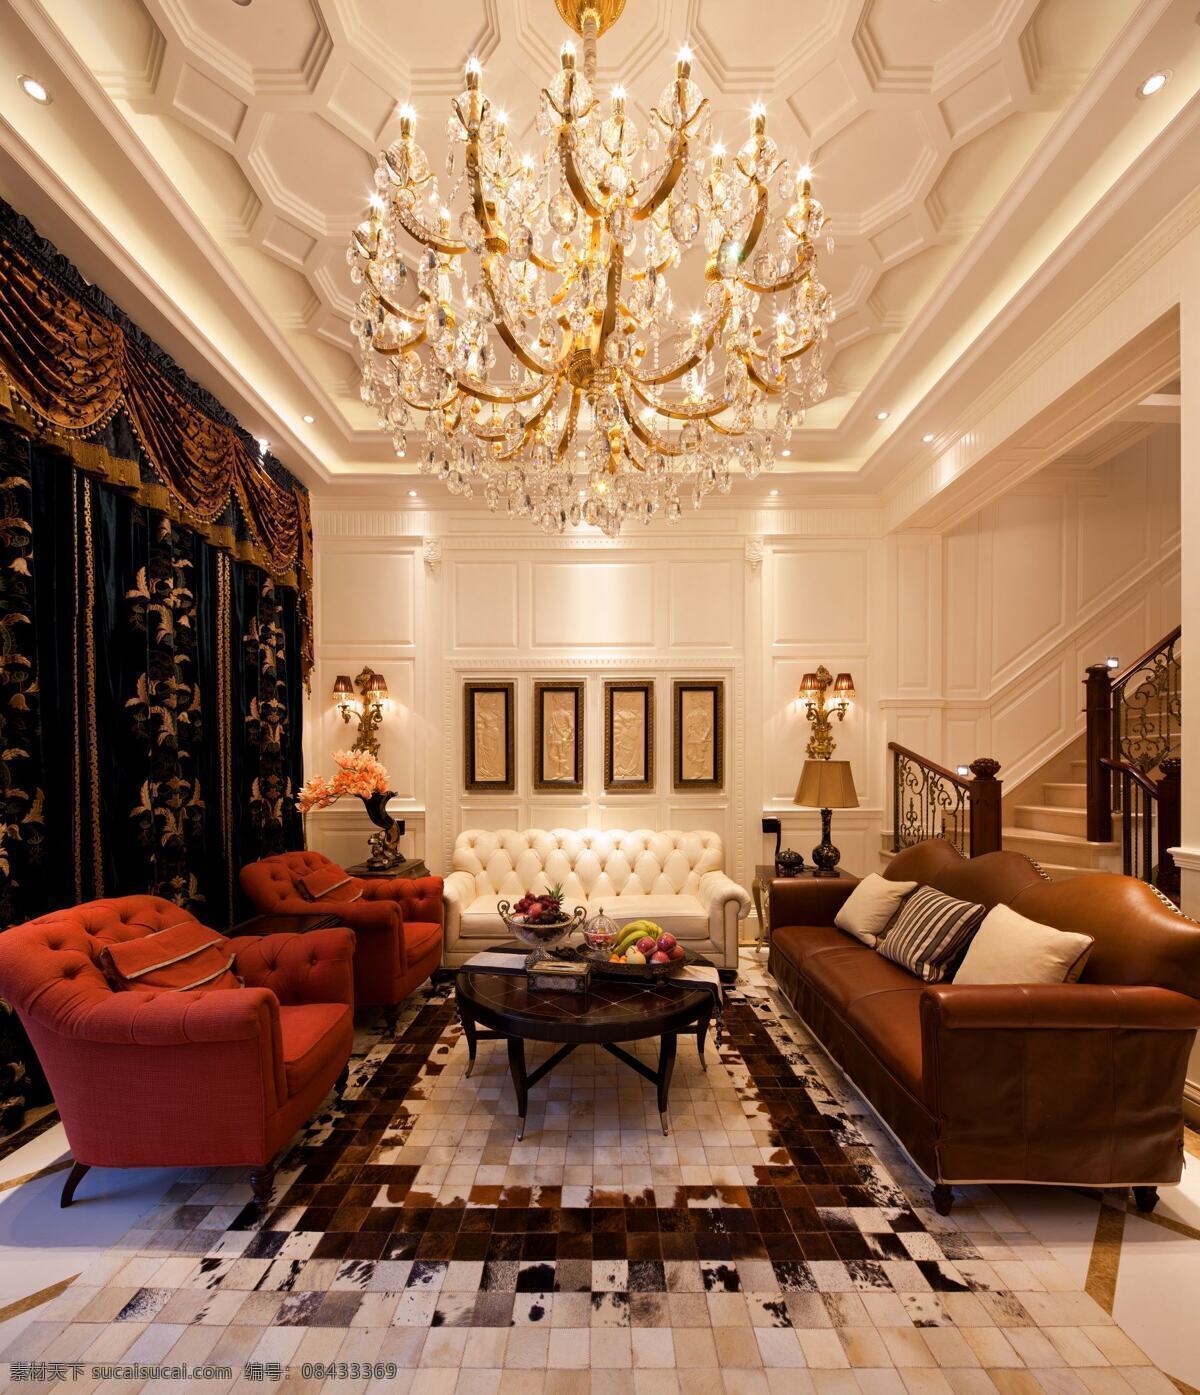 别墅 室内 客厅 欧式 奢华 装修 效果图 大空间 褐色皮艺沙发 红色座椅 奢华窗帘 豪华水晶灯